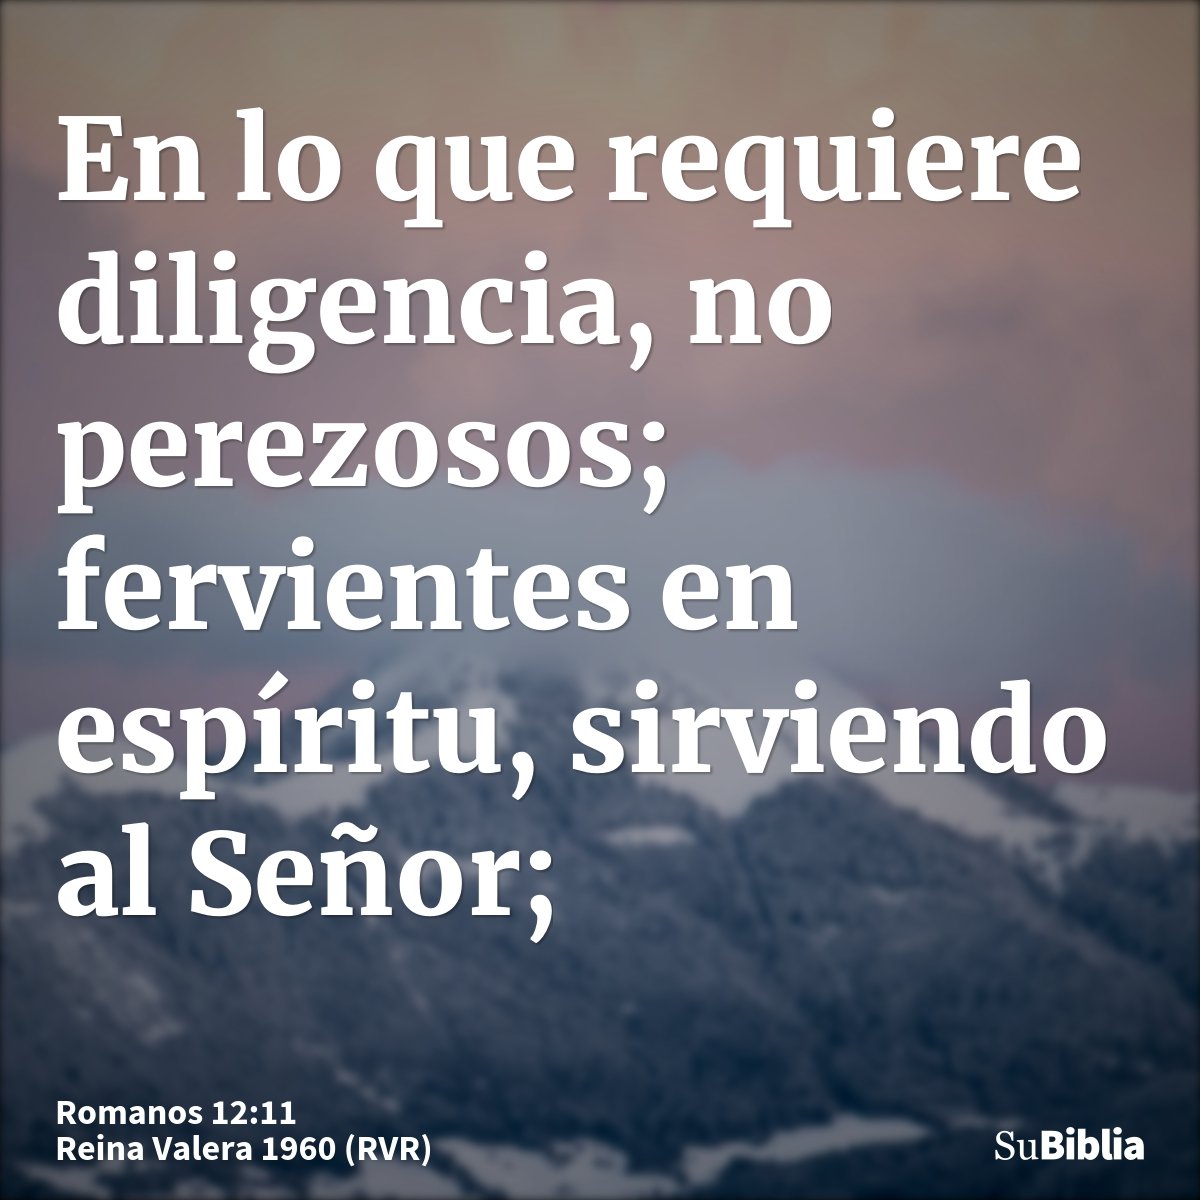 En lo que requiere diligencia, no perezosos; fervientes en espíritu, sirviendo al Señor;